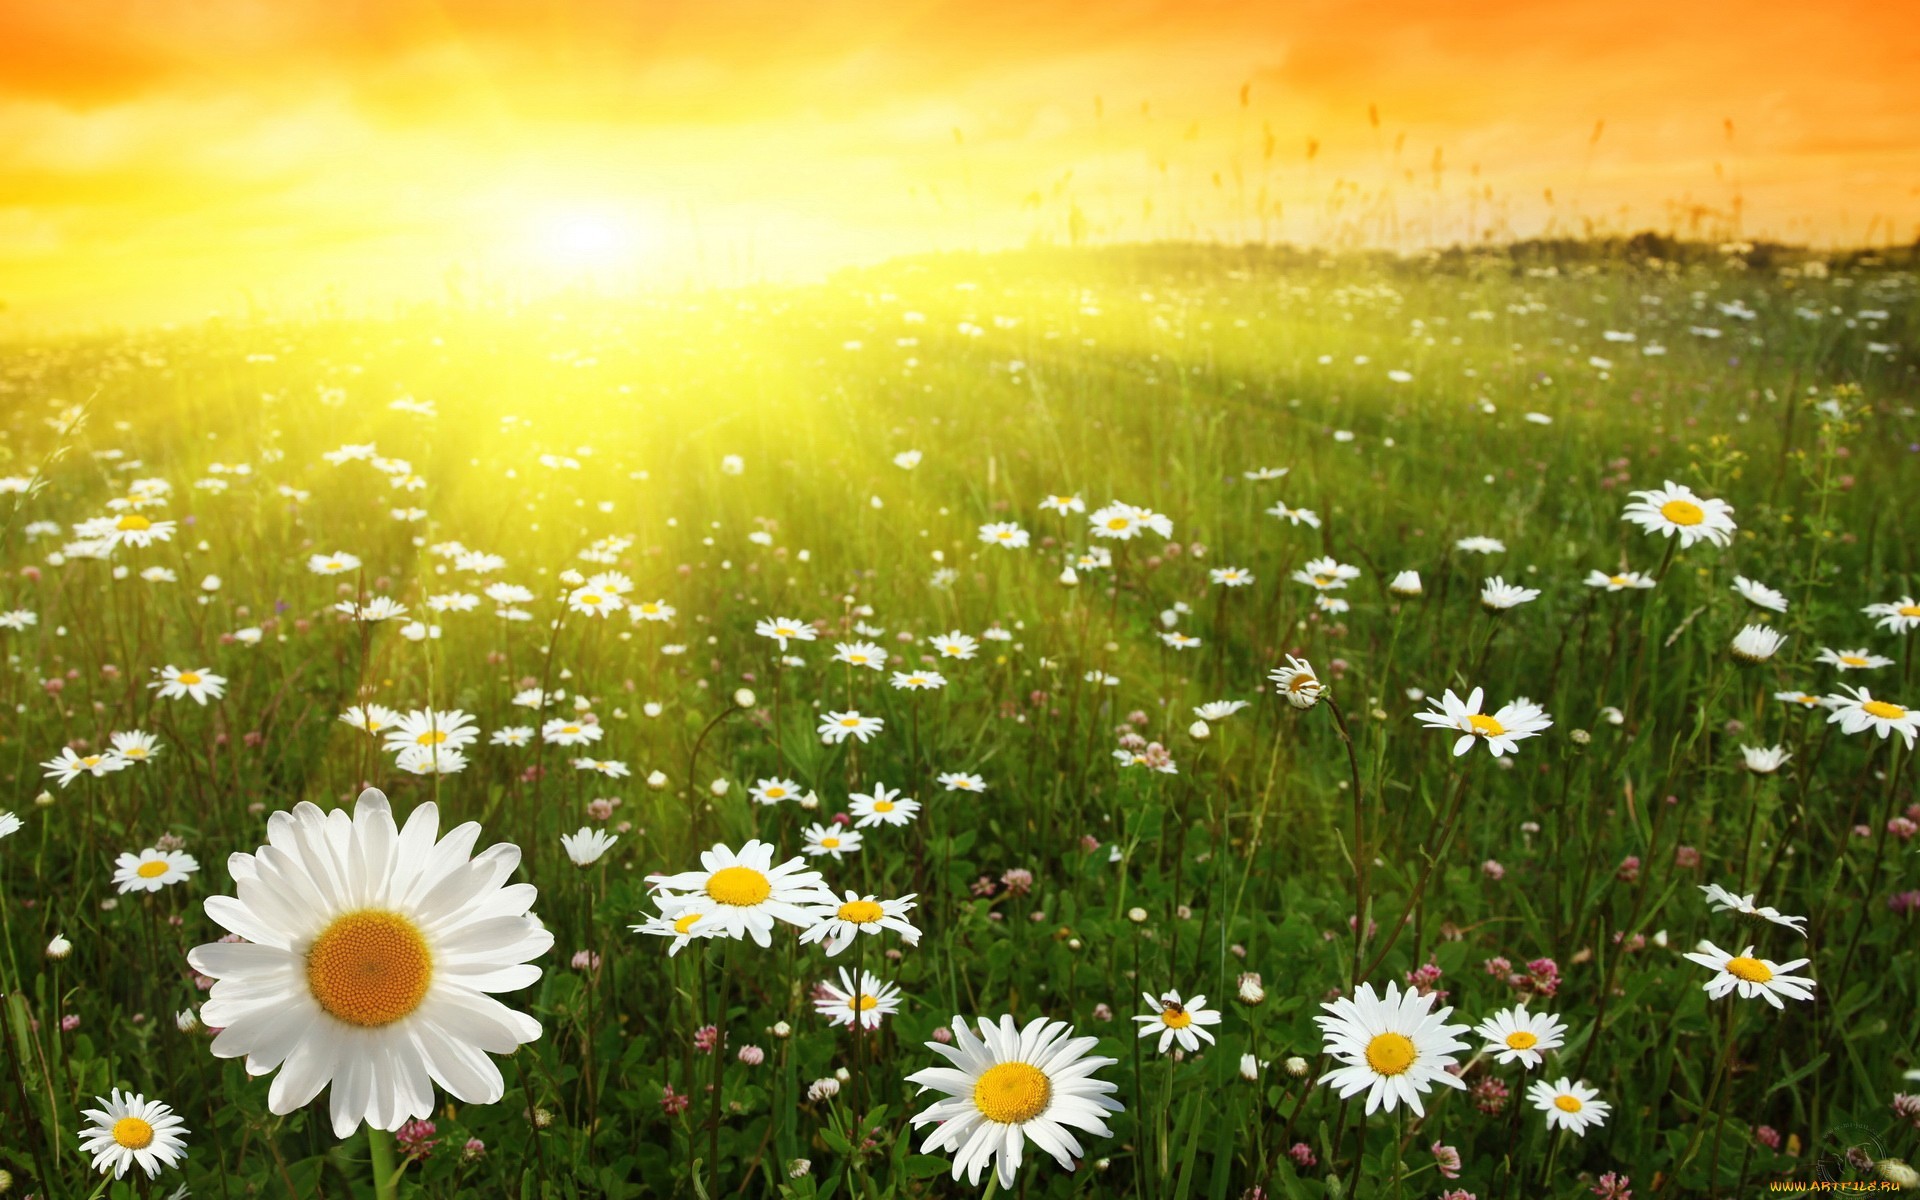 Скачать обои бесплатно Солнце, Пейзаж, Ромашки, Цветы, Растения картинка на рабочий стол ПК